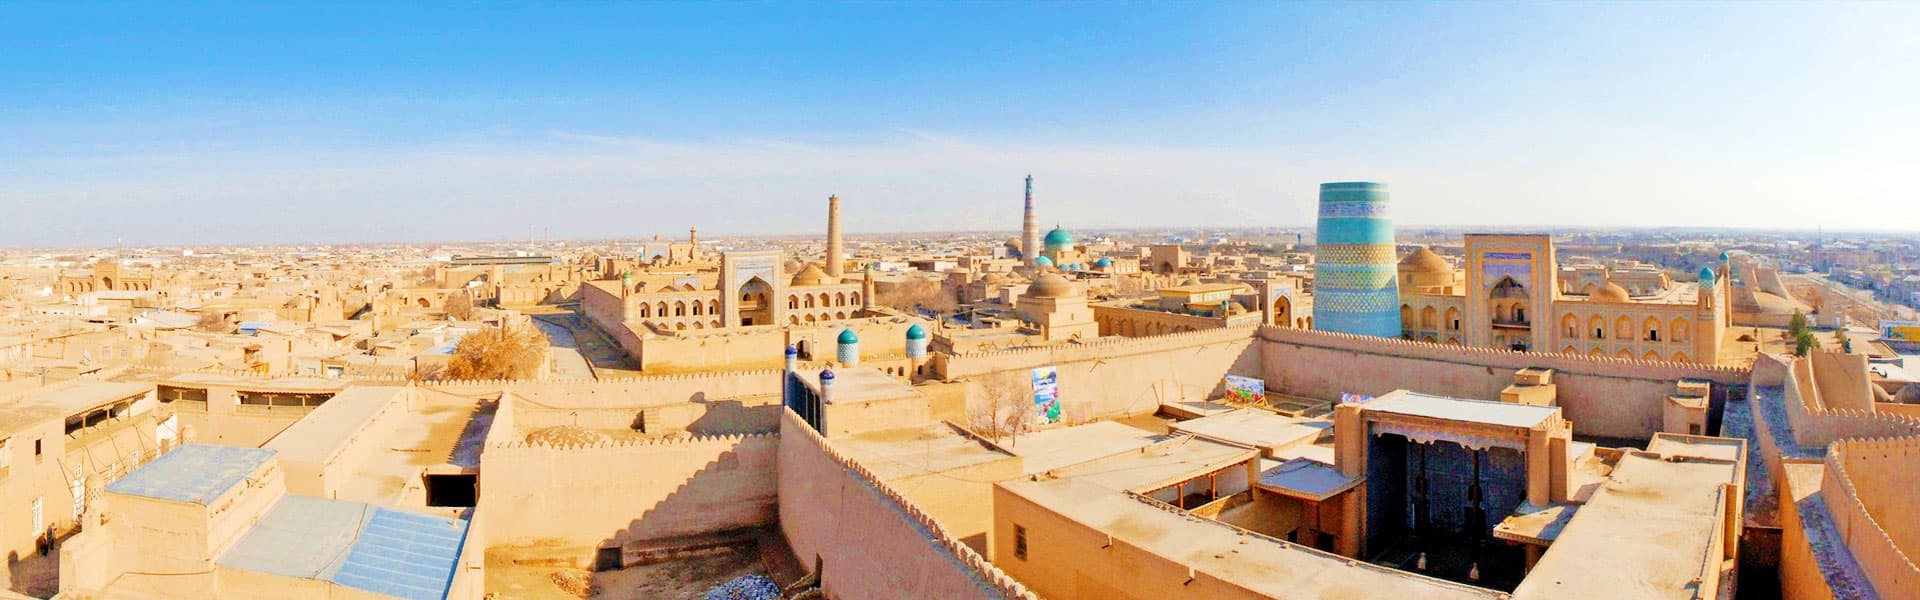 Khiva City